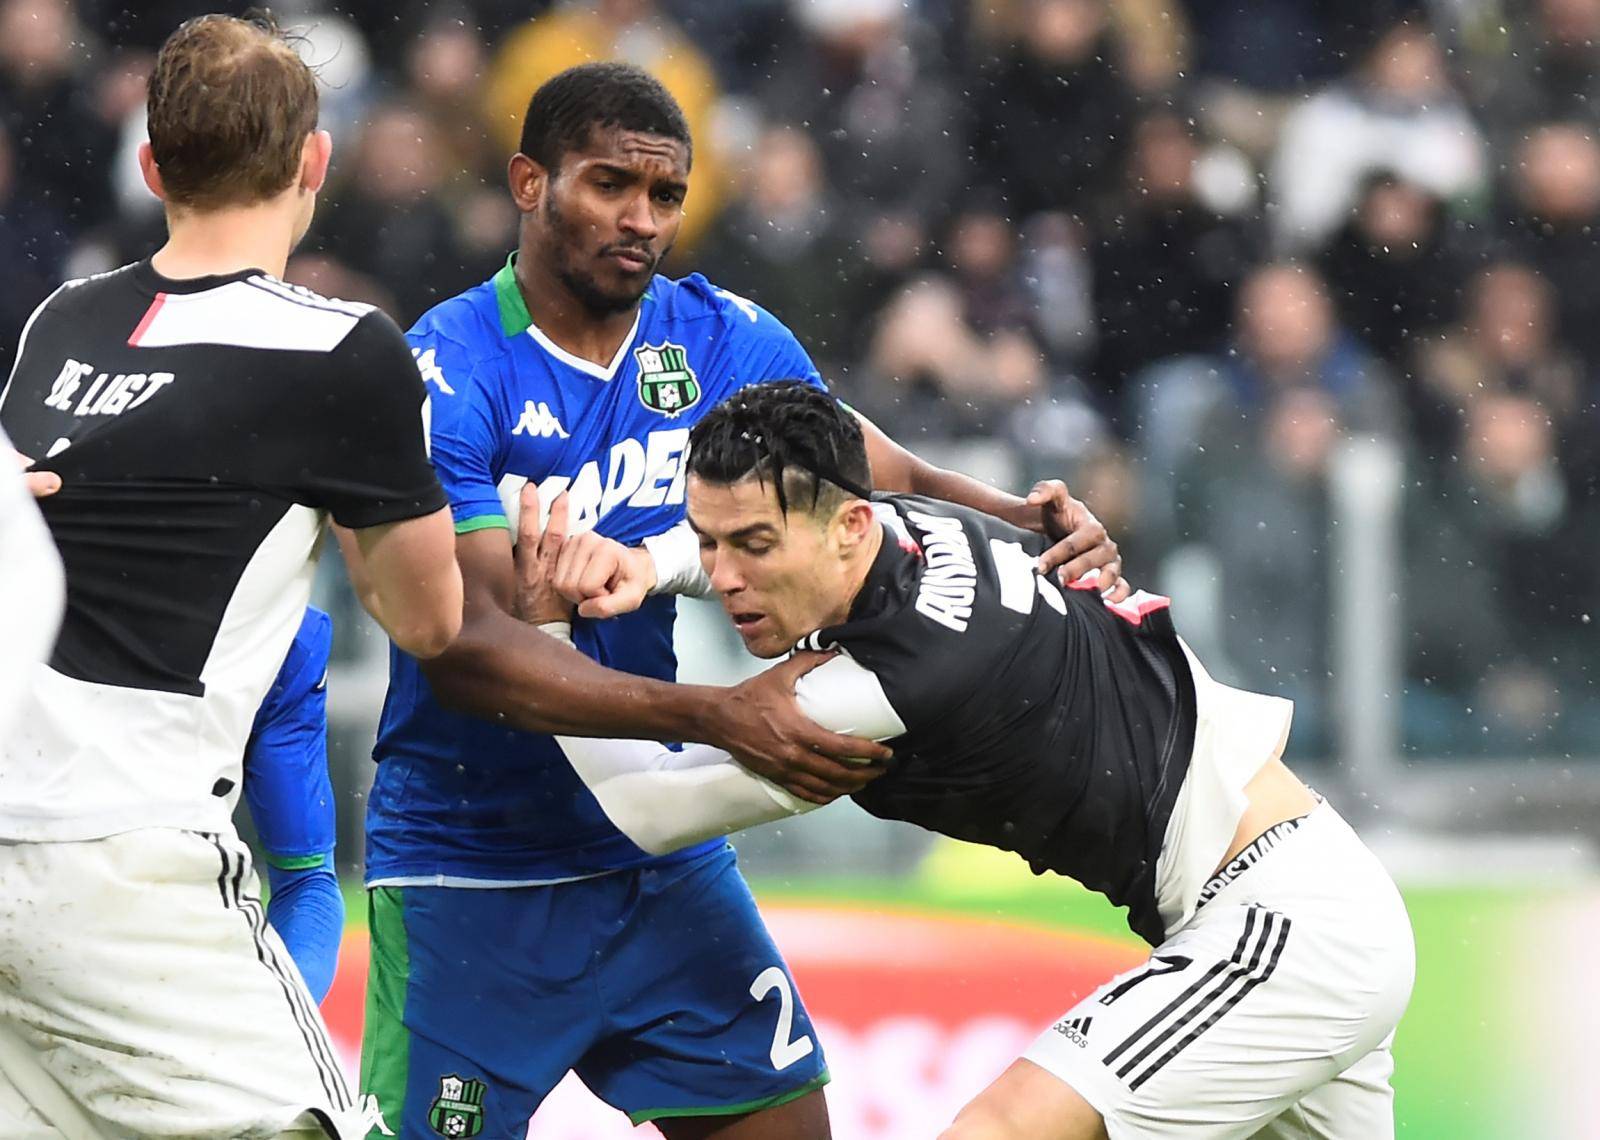 Serie A - Juventus v U.S Sassuolo